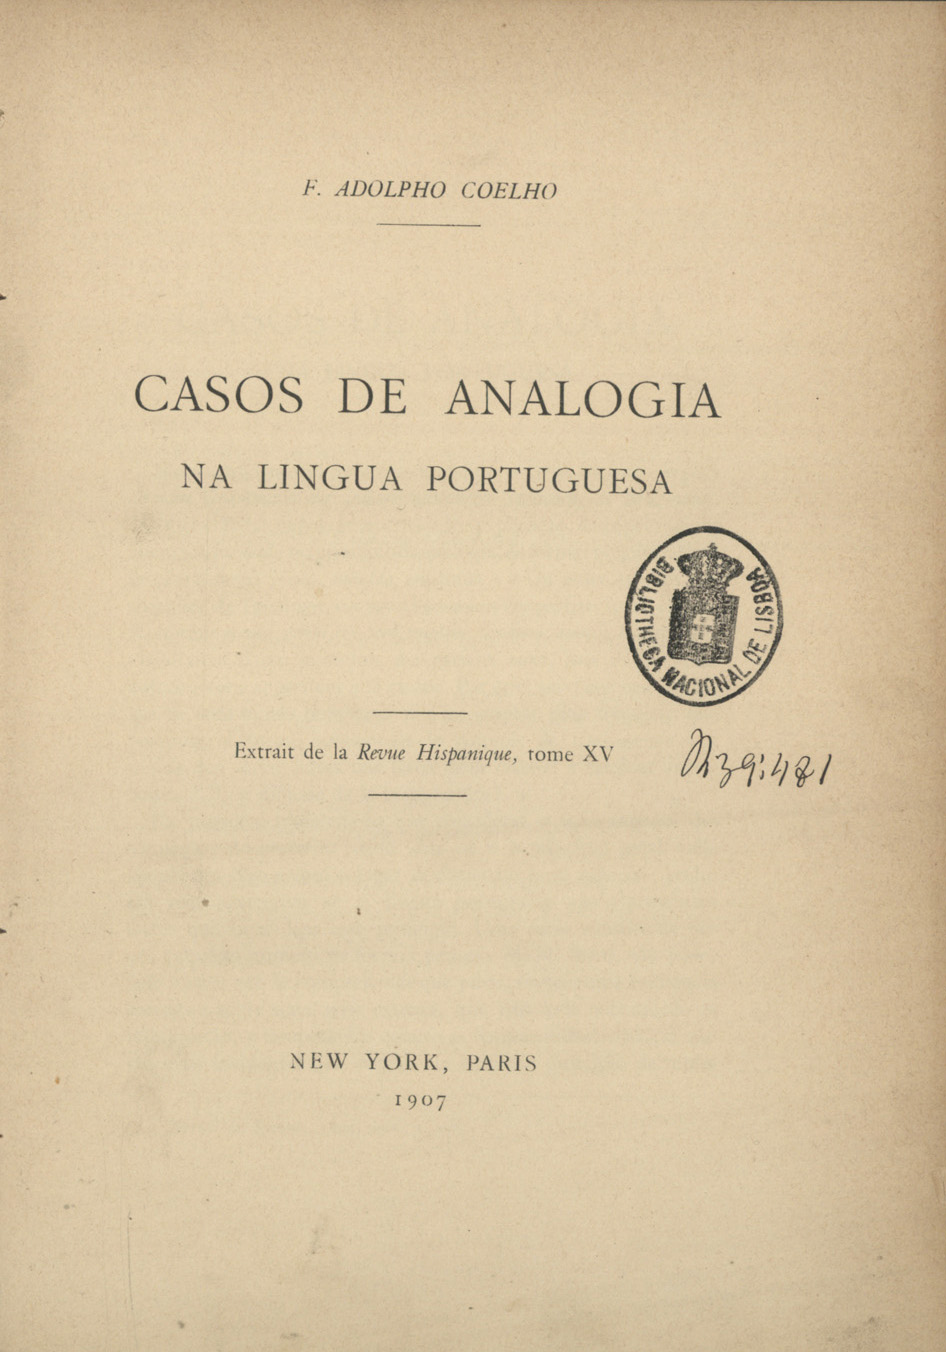 Cover of Casos de analogia na lingua portuguesa / F. Adolpho Coelho. - New York ;. - Paris : [s.n.], 1907. - 34 p. ; 21 cm